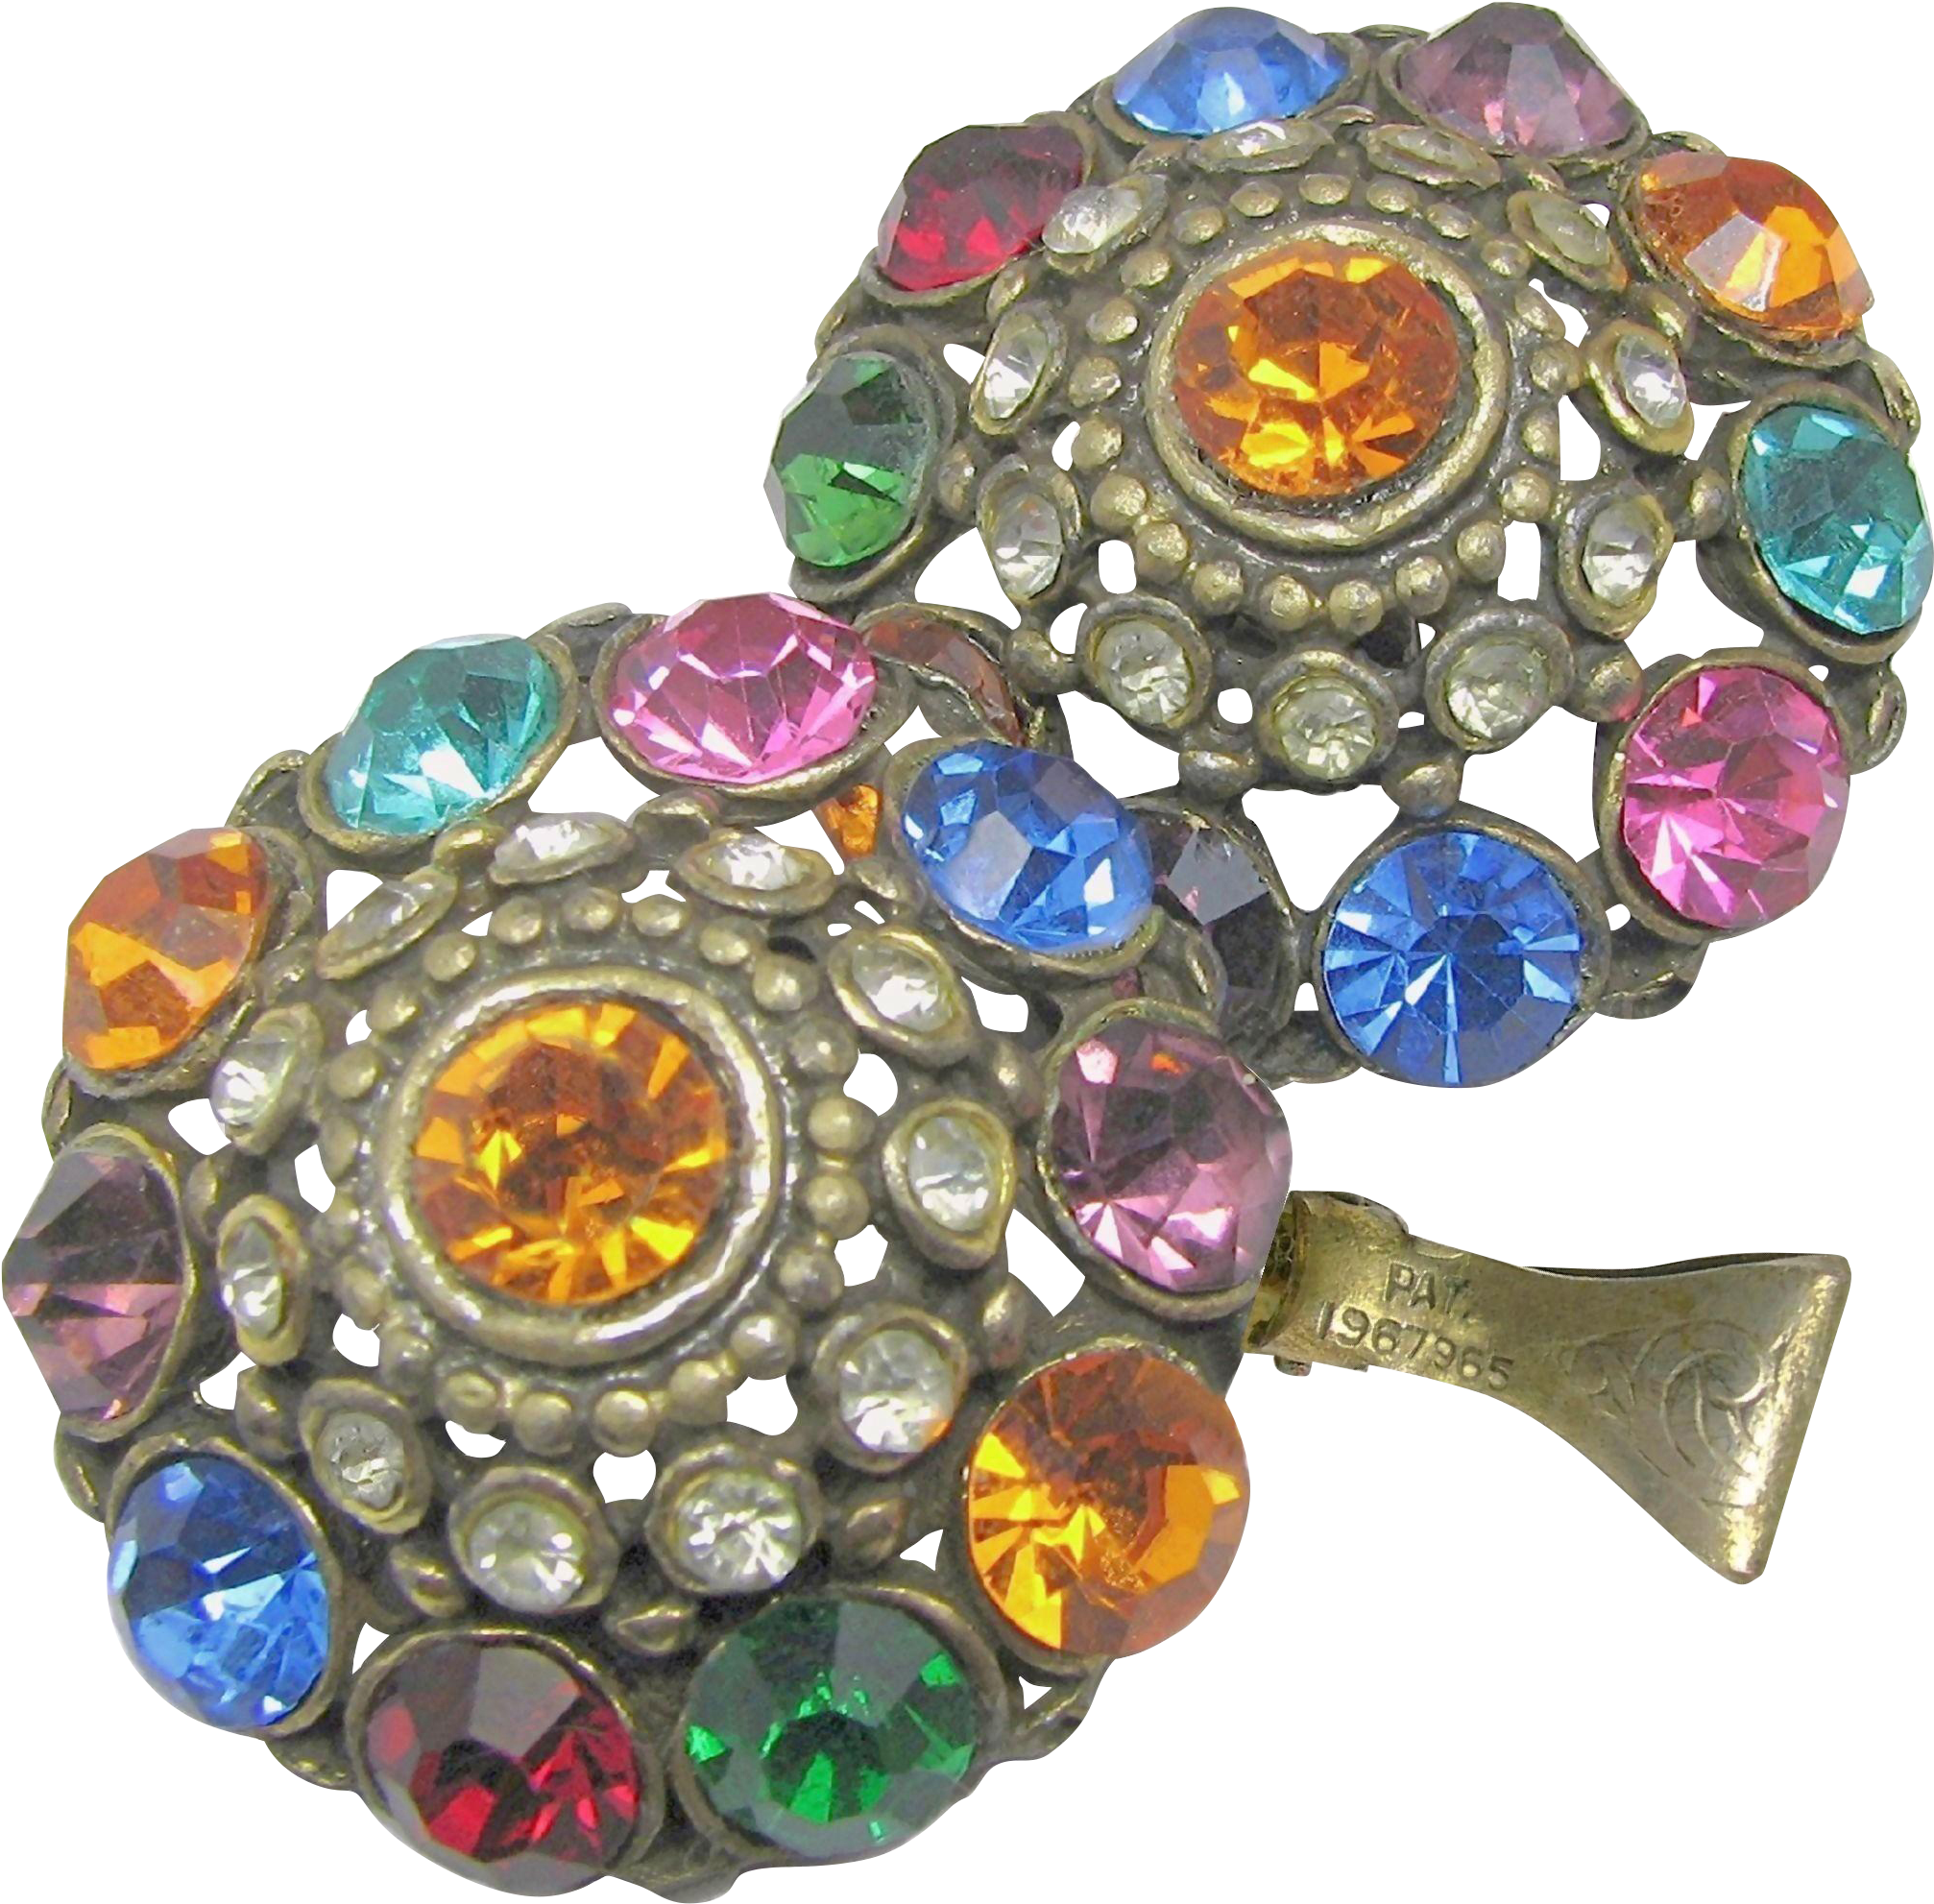 Large Jewel-tone Art Deco Rhinestone Pierced Metal - Art Deco Jewel-tone Rhinestone Earrings 'n Clip Pat.1967965 (2013x2013)